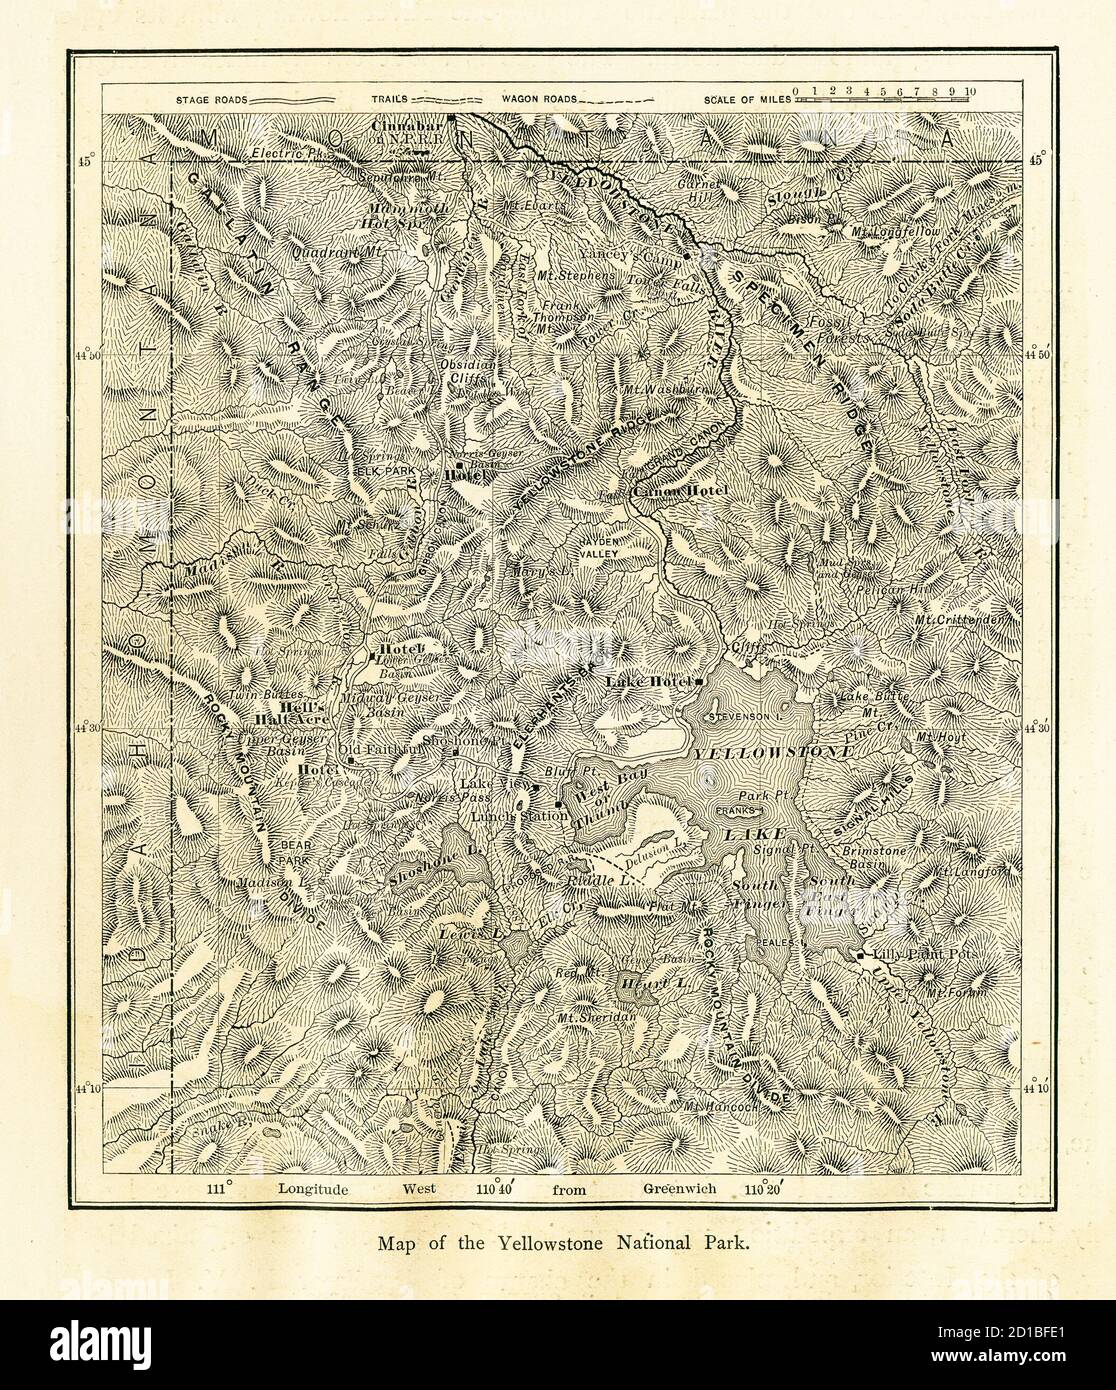 Holzstich einer Karte des Yellowstone National Park aus dem 19. Jahrhundert, der sich hauptsächlich im US-Bundesstaat Wyoming befindet. Illustration veröffentlicht in picturesq Stockfoto